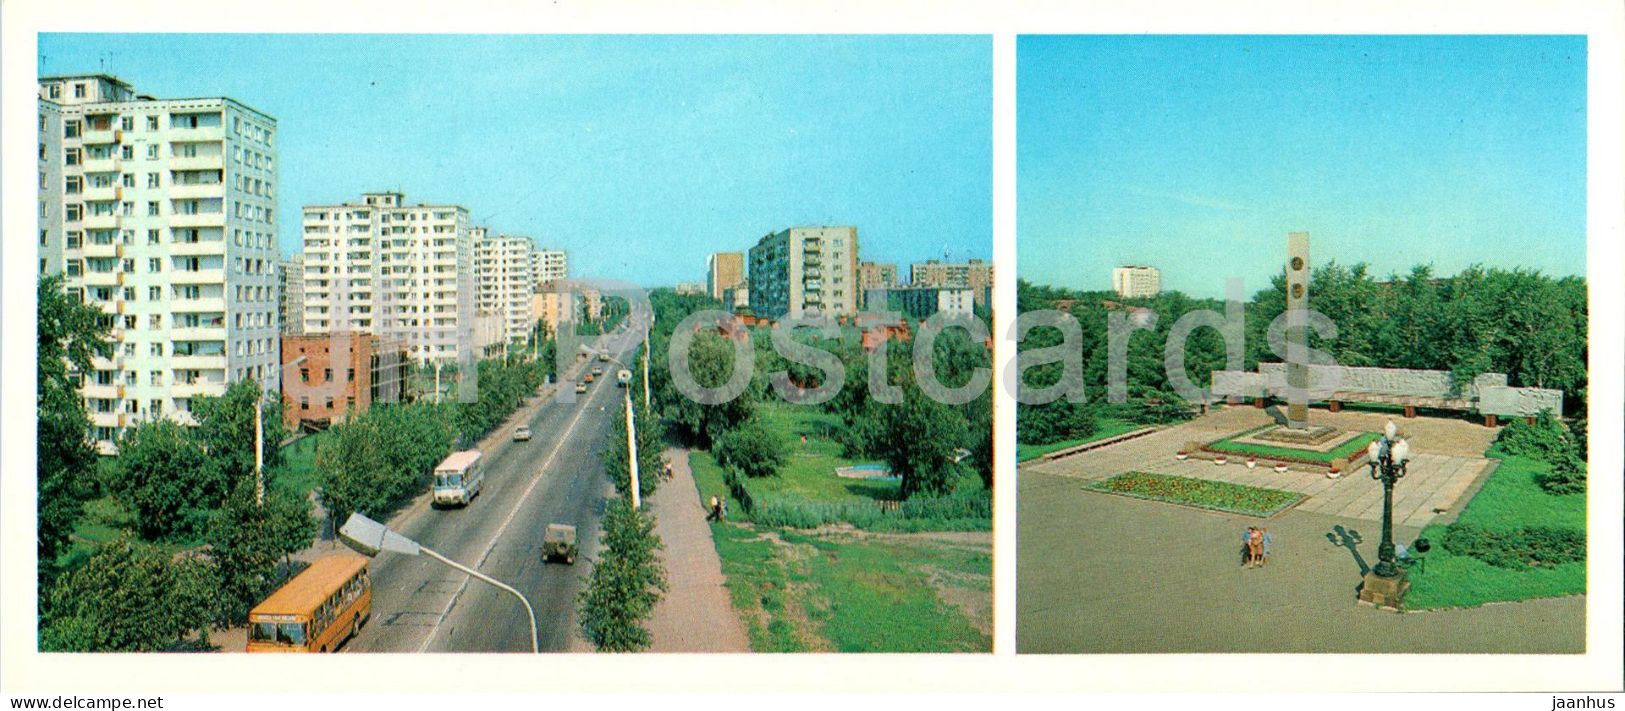 Omsk - Krasnyi Put Street - Obelisk - Bus - 1982 - Russia USSR - Unused - Rusland